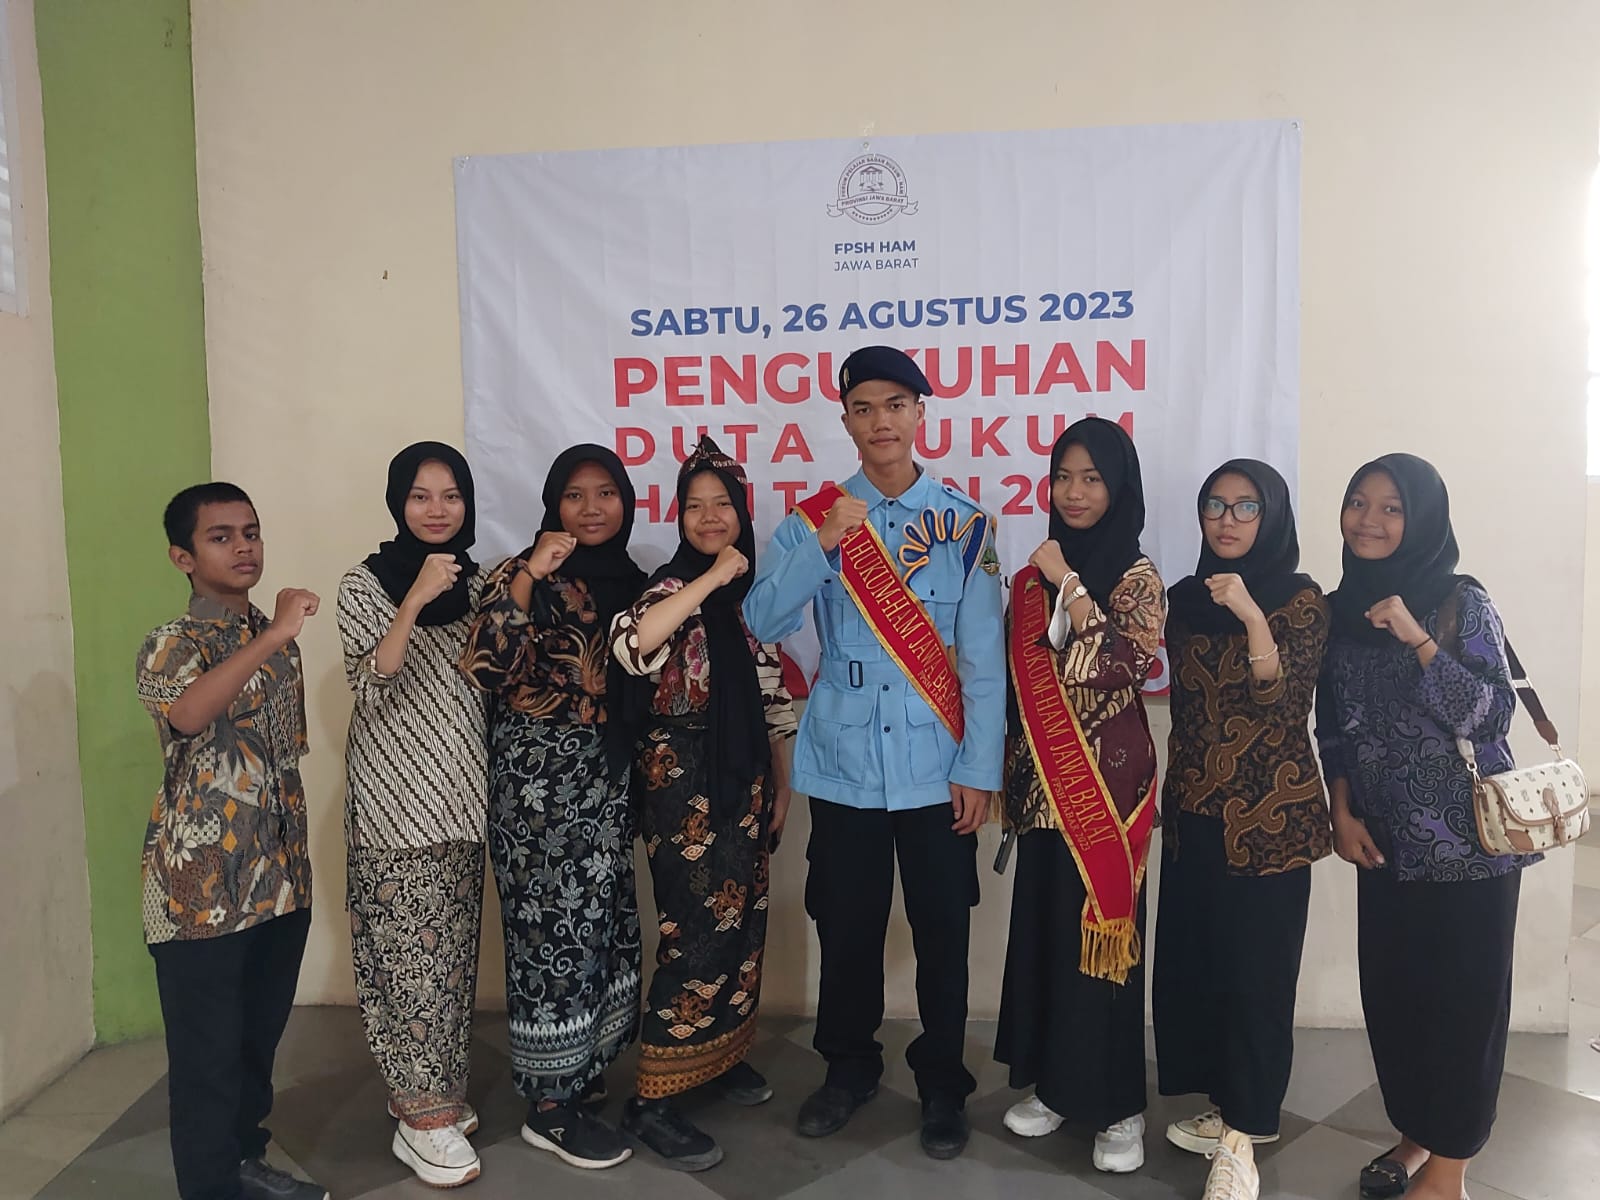 Read more about the article 8 Siswa/i SMKN 1 Gunungputri Kab. Bogor mengikuti Kegiatan Pengukuhan Duta Hukum dan HAM Provinsi Jawa Barat 2023: Spirit Berbagi untuk Masyarakat